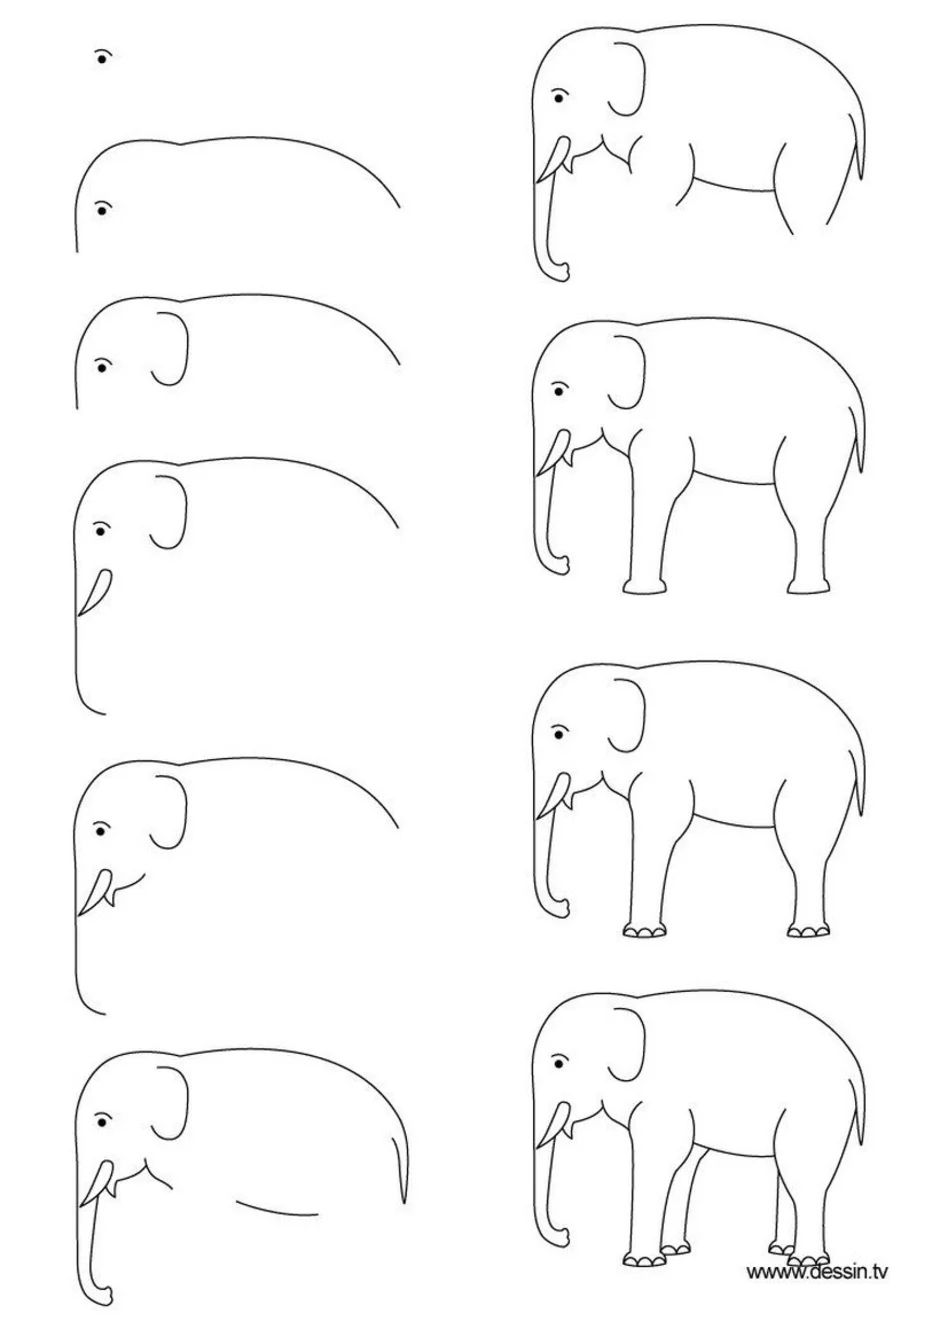 Как нарисовать Cлона поэтапно